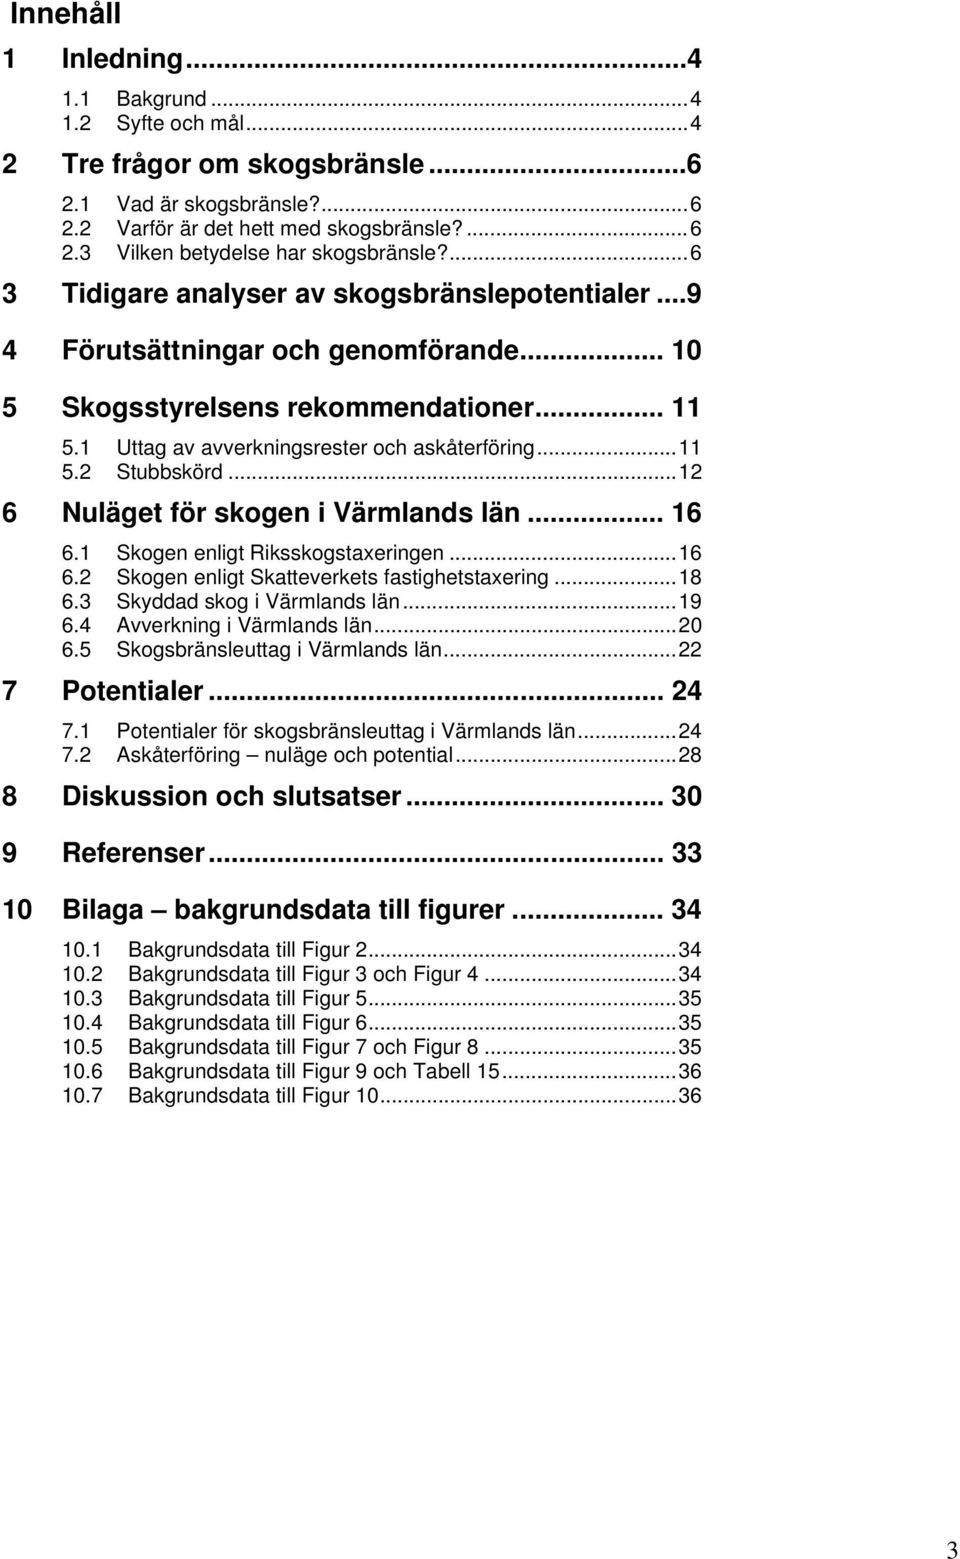 .. 12 6 Nuläget för skogen i Värmlands län... 16 6.1 Skogen enligt Riksskogstaxeringen... 16 6.2 Skogen enligt Skatteverkets fastighetstaxering... 18 6.3 Skyddad skog i Värmlands län... 19 6.